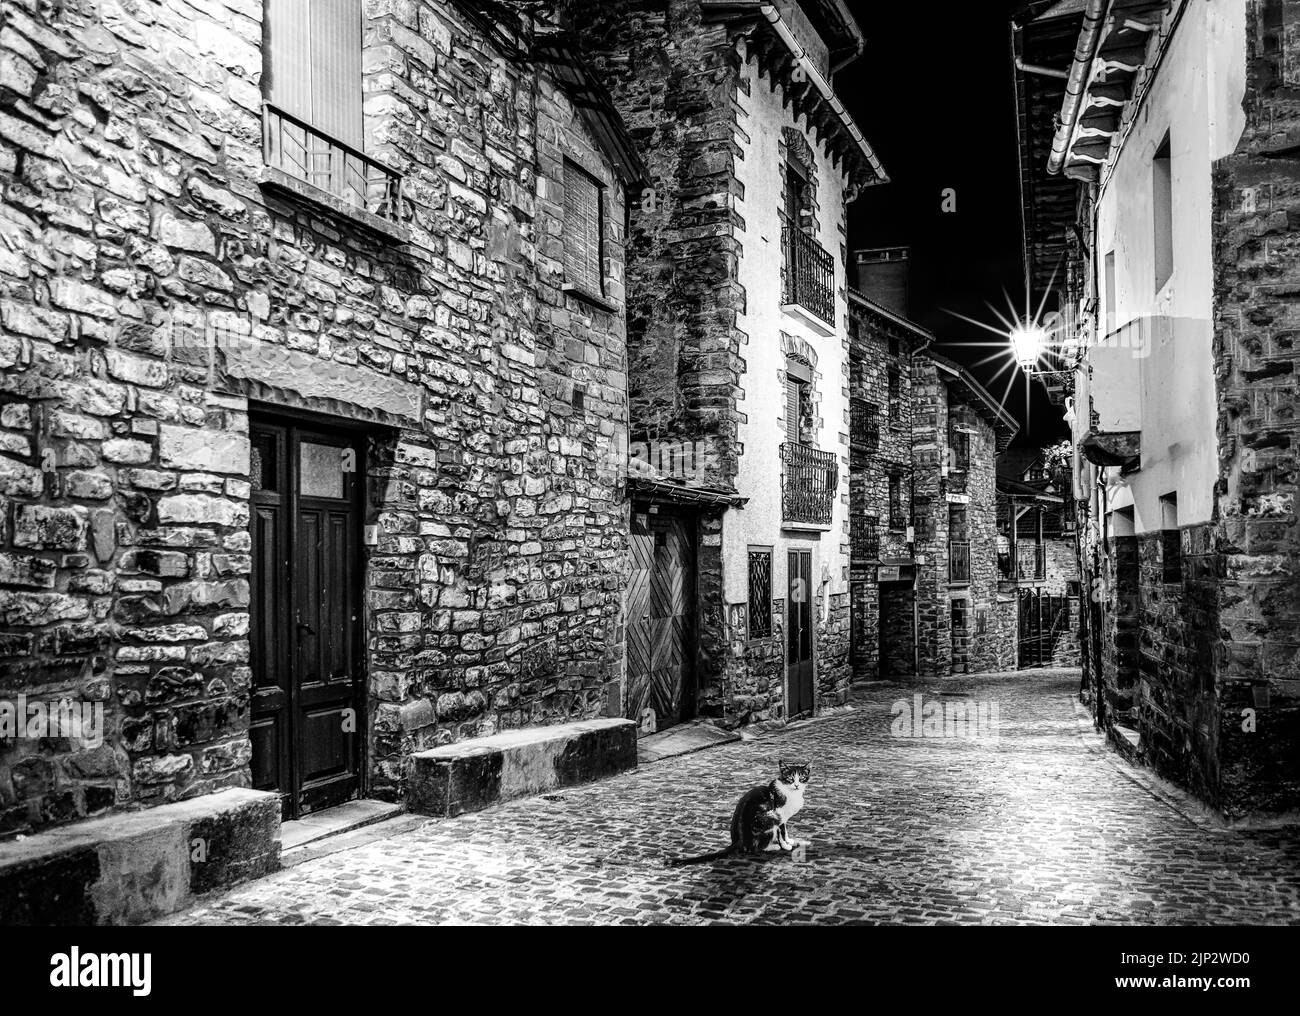 Katze in der Nacht, die Kamera anschaut, in der Straße der Steinhäuser, Bergdorf. Mittelalterliche Architektur. Schwarz und Weiß. Stockfoto